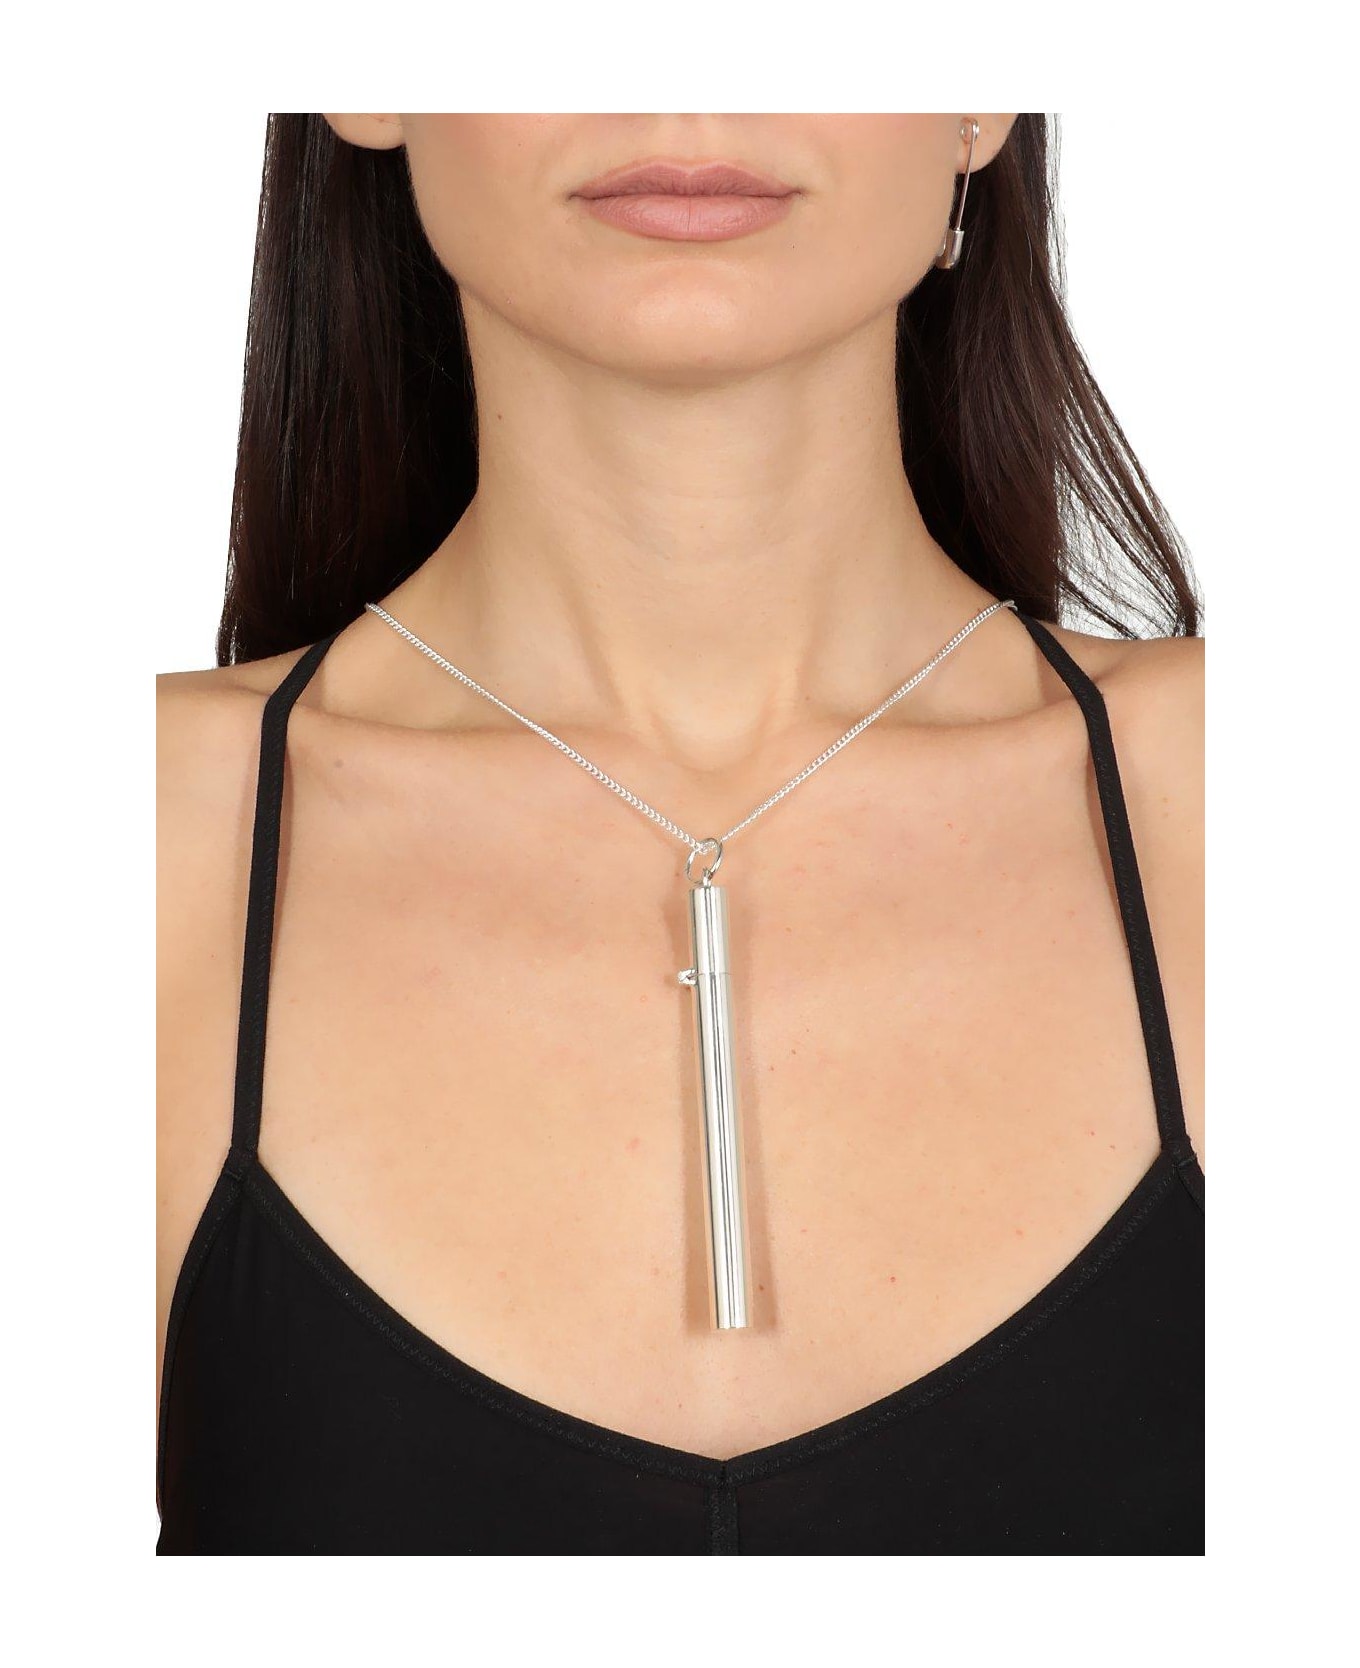 AMBUSH Cigarette Case Pendant Necklace - Silver ネックレス